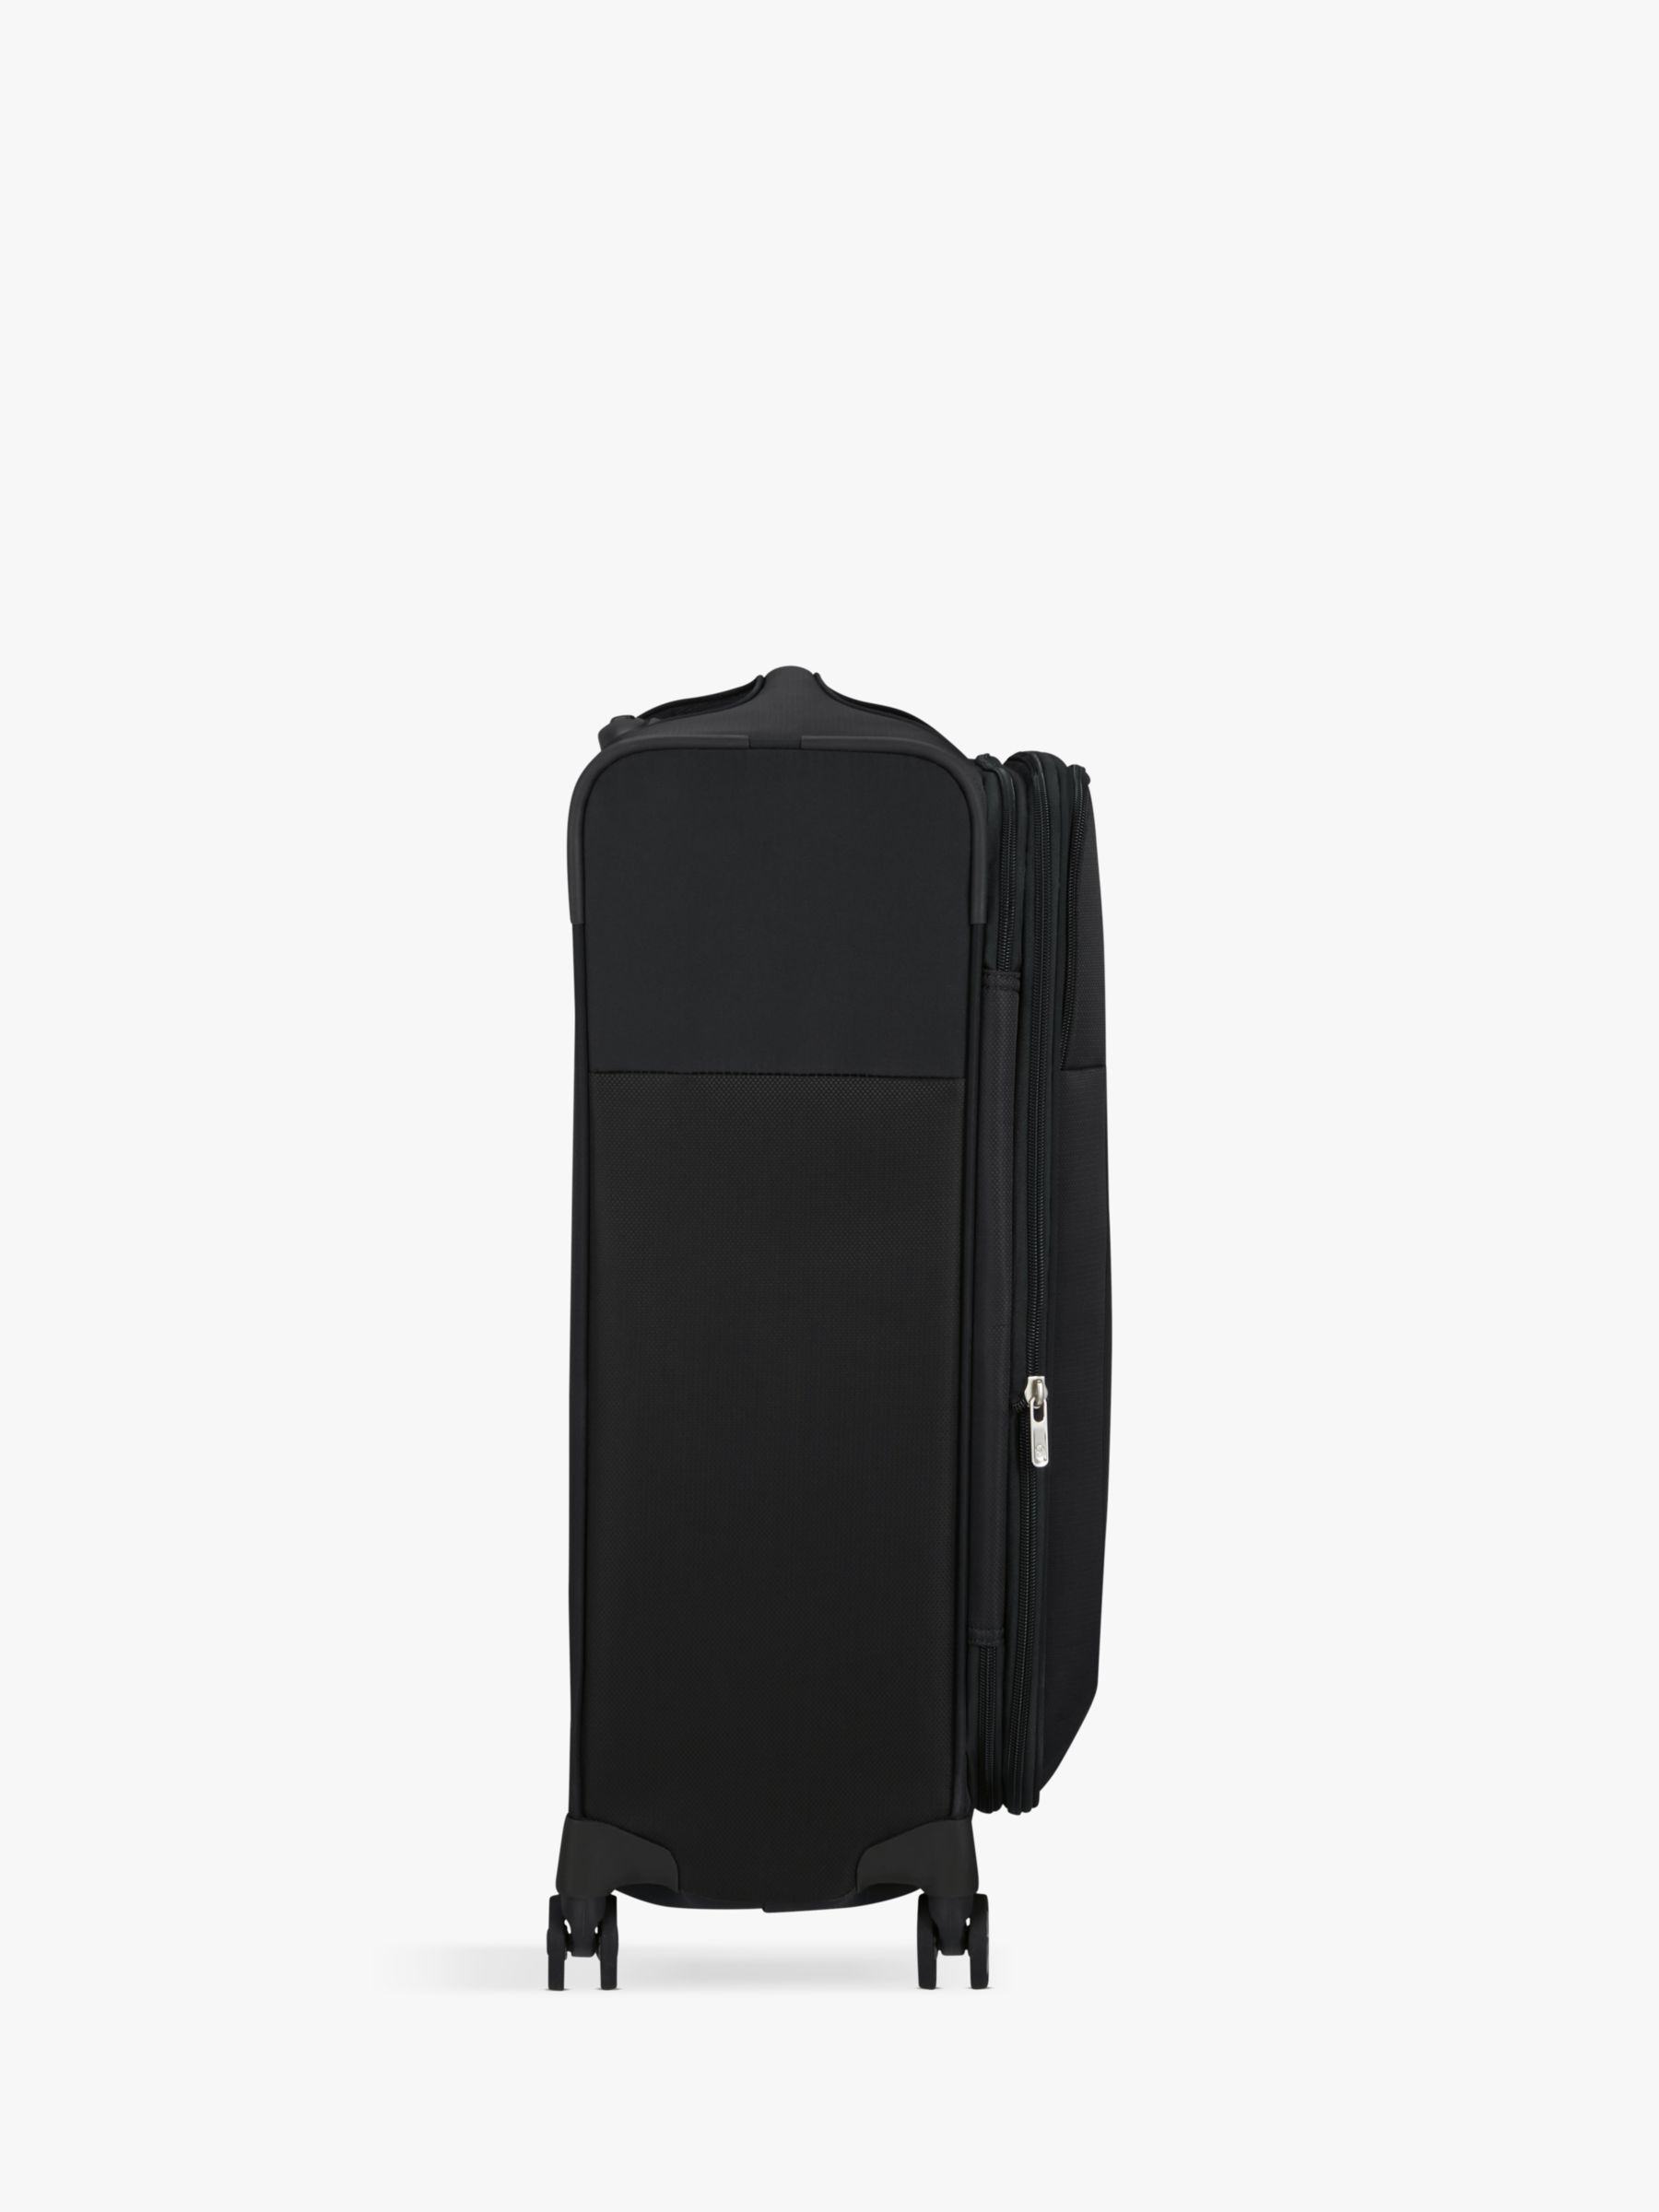 Samsonite D'Lite 4-Wheel 63cm Medium Expandable Suitcase, Graphite